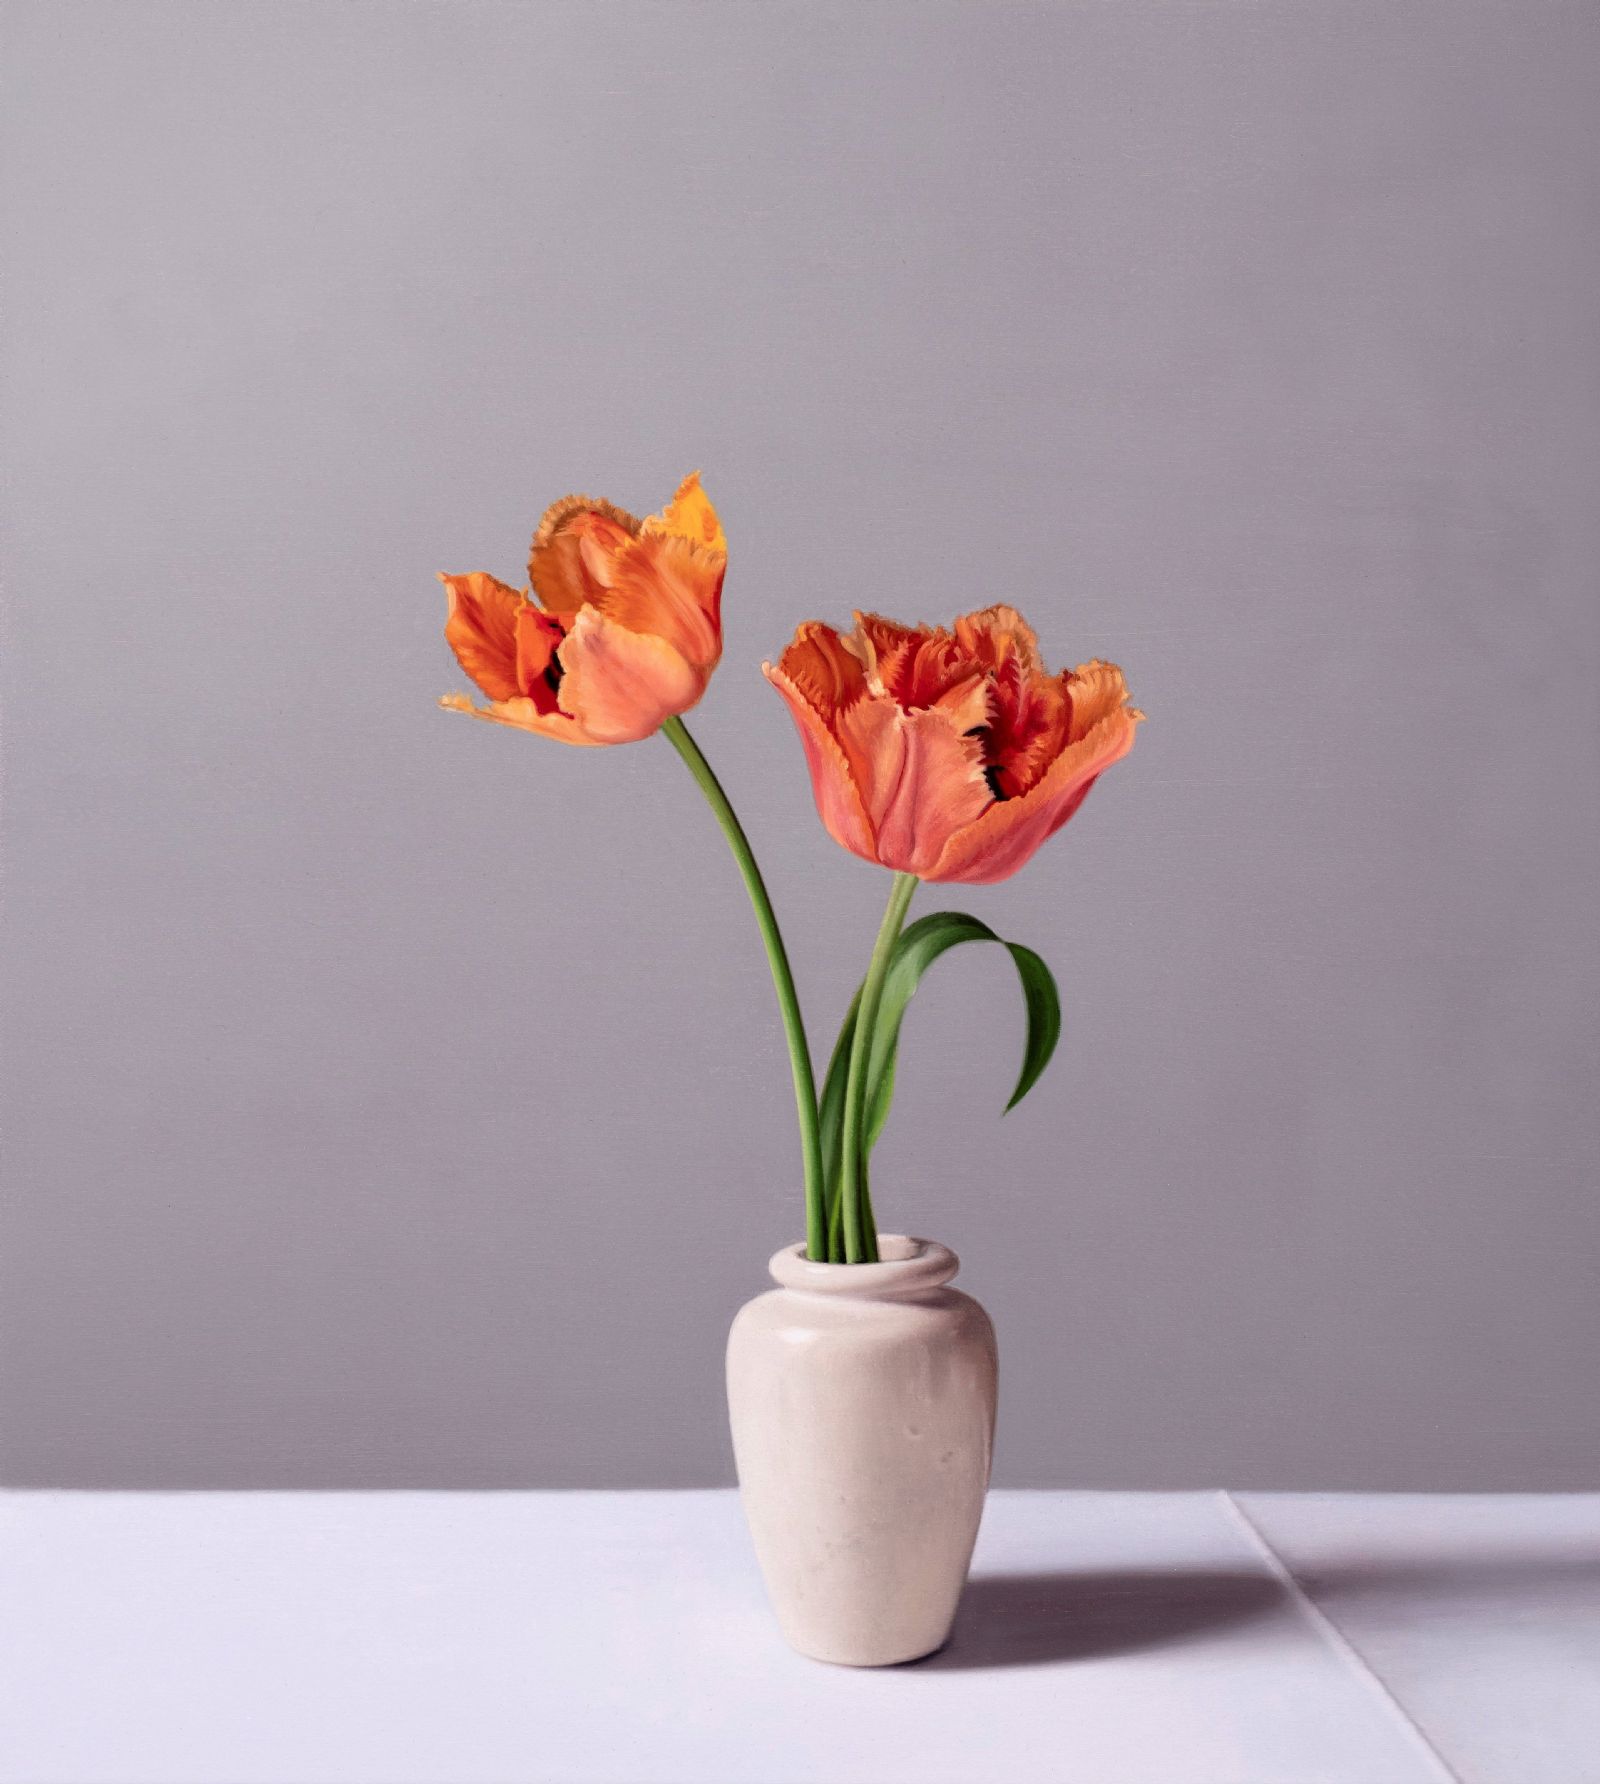 Jo Barrett - Still Life with Frilly Tulips and Stoneware Pot 